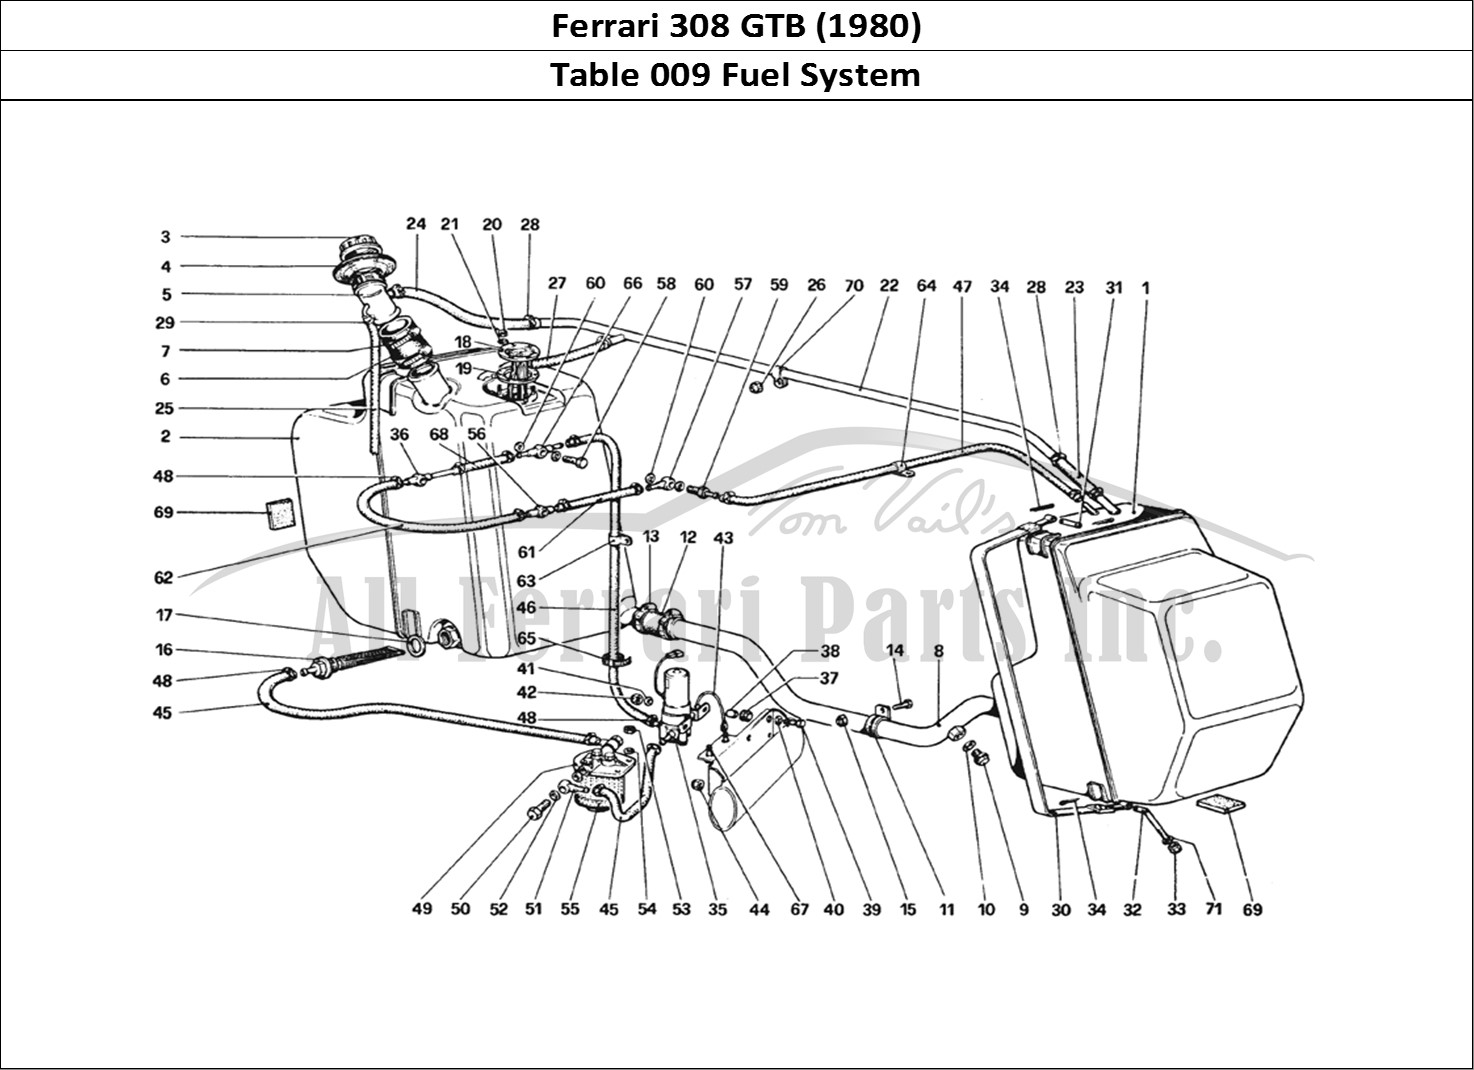 Ferrari Parts Ferrari 308 GTB (1980) Page 009 Fuel System